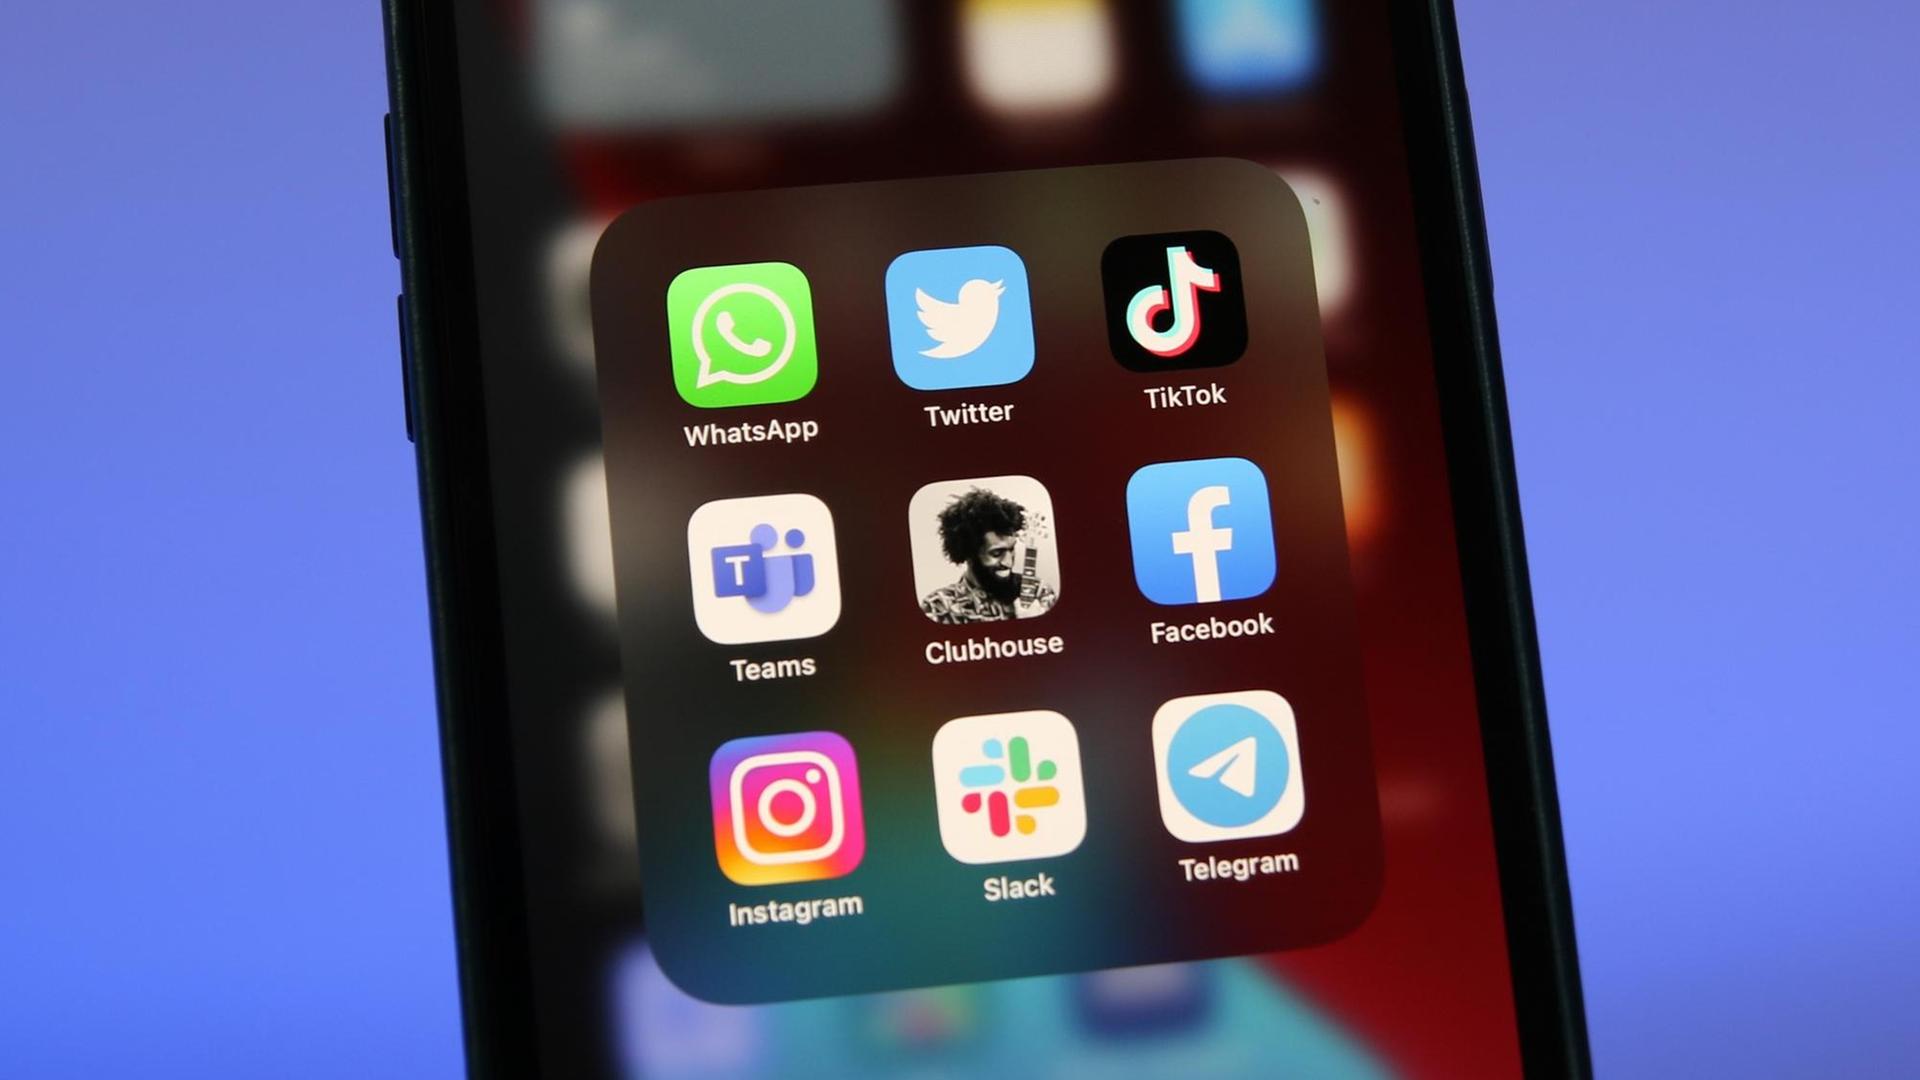 Die Logos der Social-Media-Plattformen WhatsApp, Twitter, TikTok, Microsoft Teams, Clubhouse, Facebook, Instagram, Slack und Telegramm sind auf einem iPhone 12 Pro Max von Apple zu sehen